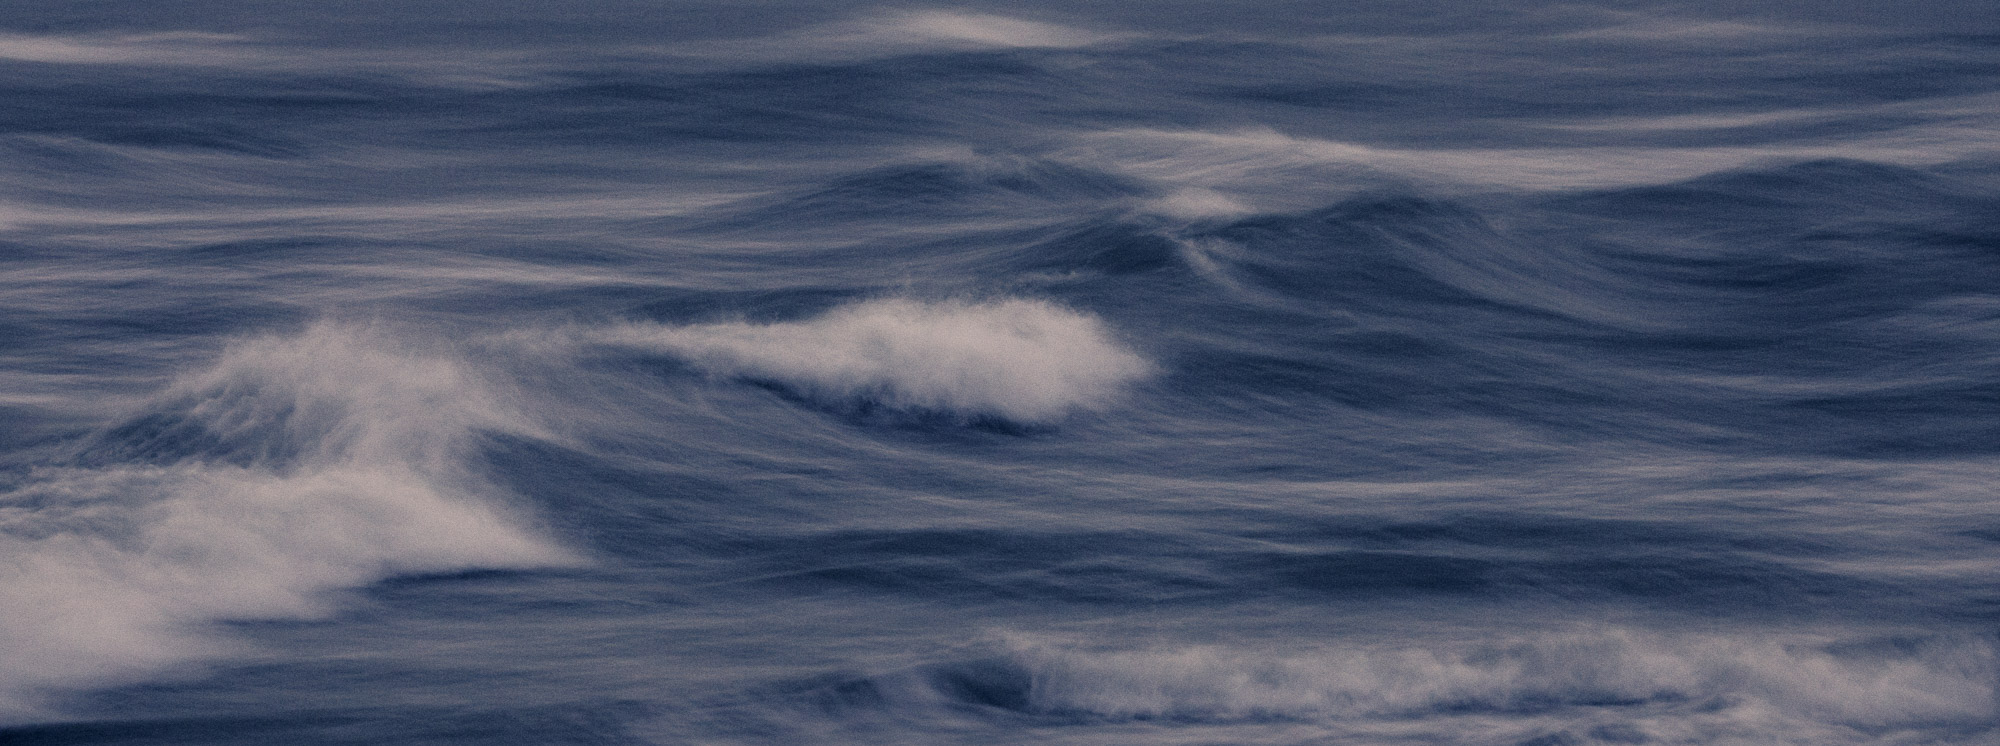 Waves © Kevin Winterhoff